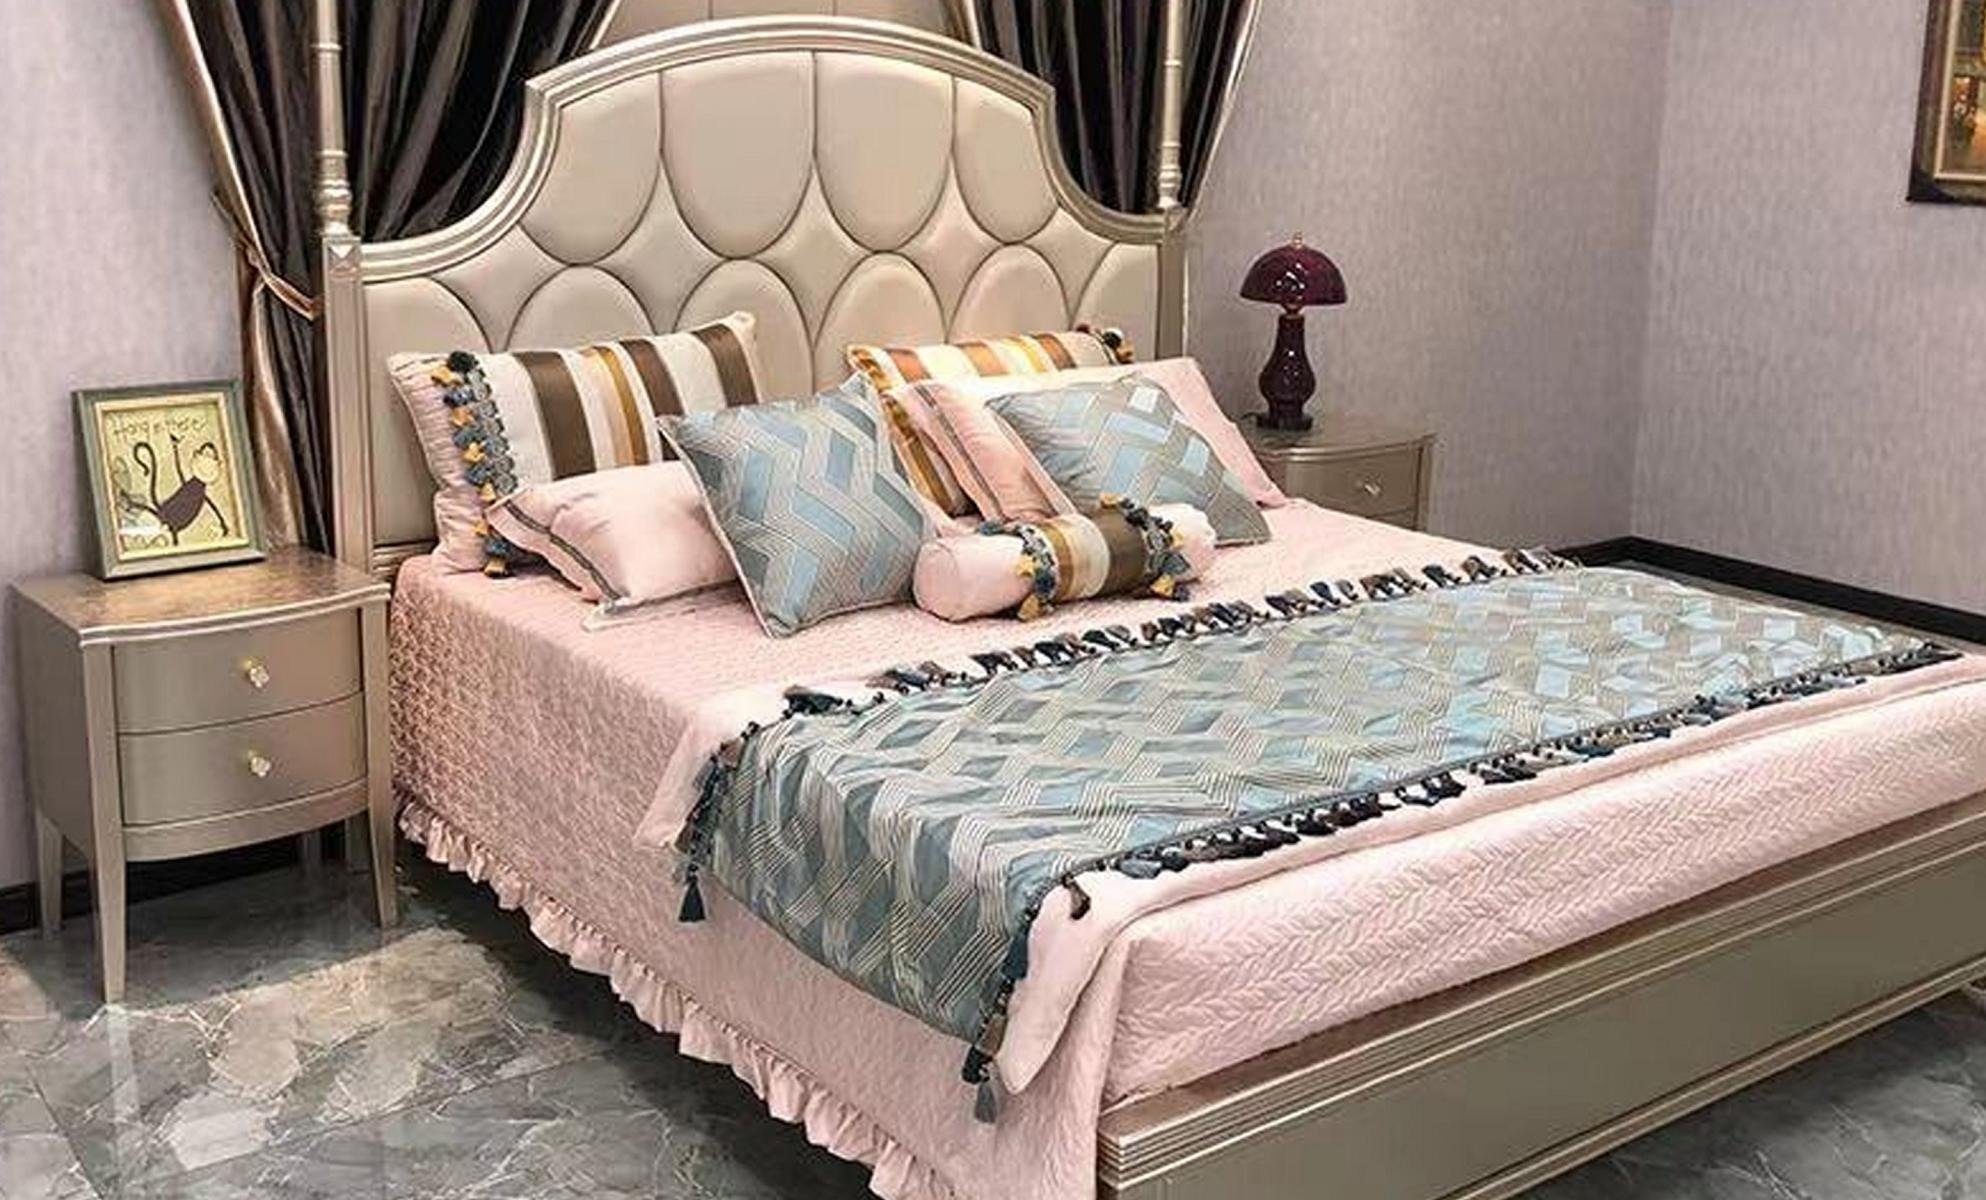 JVmoebel Bett, Beige Holz Luxus Betten Bett Doppelbett Bettrahmen Bettgestelle